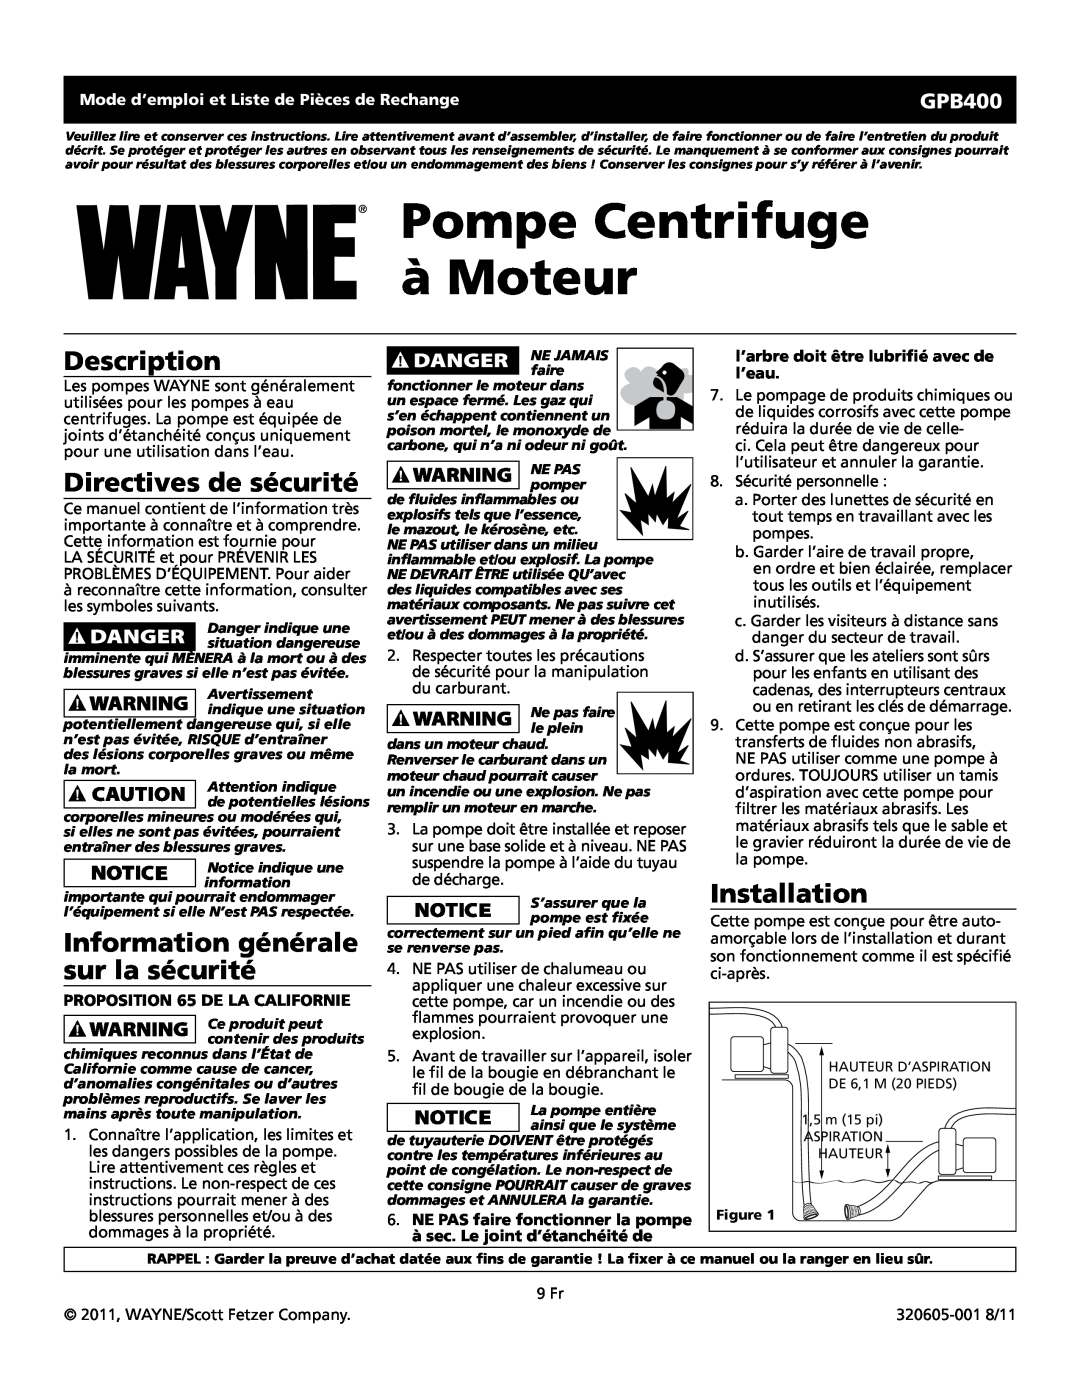 Wayne GPB400 warranty Pompe Centrifuge à Moteur, Directives de sécurité, Information générale sur la sécurité, Description 